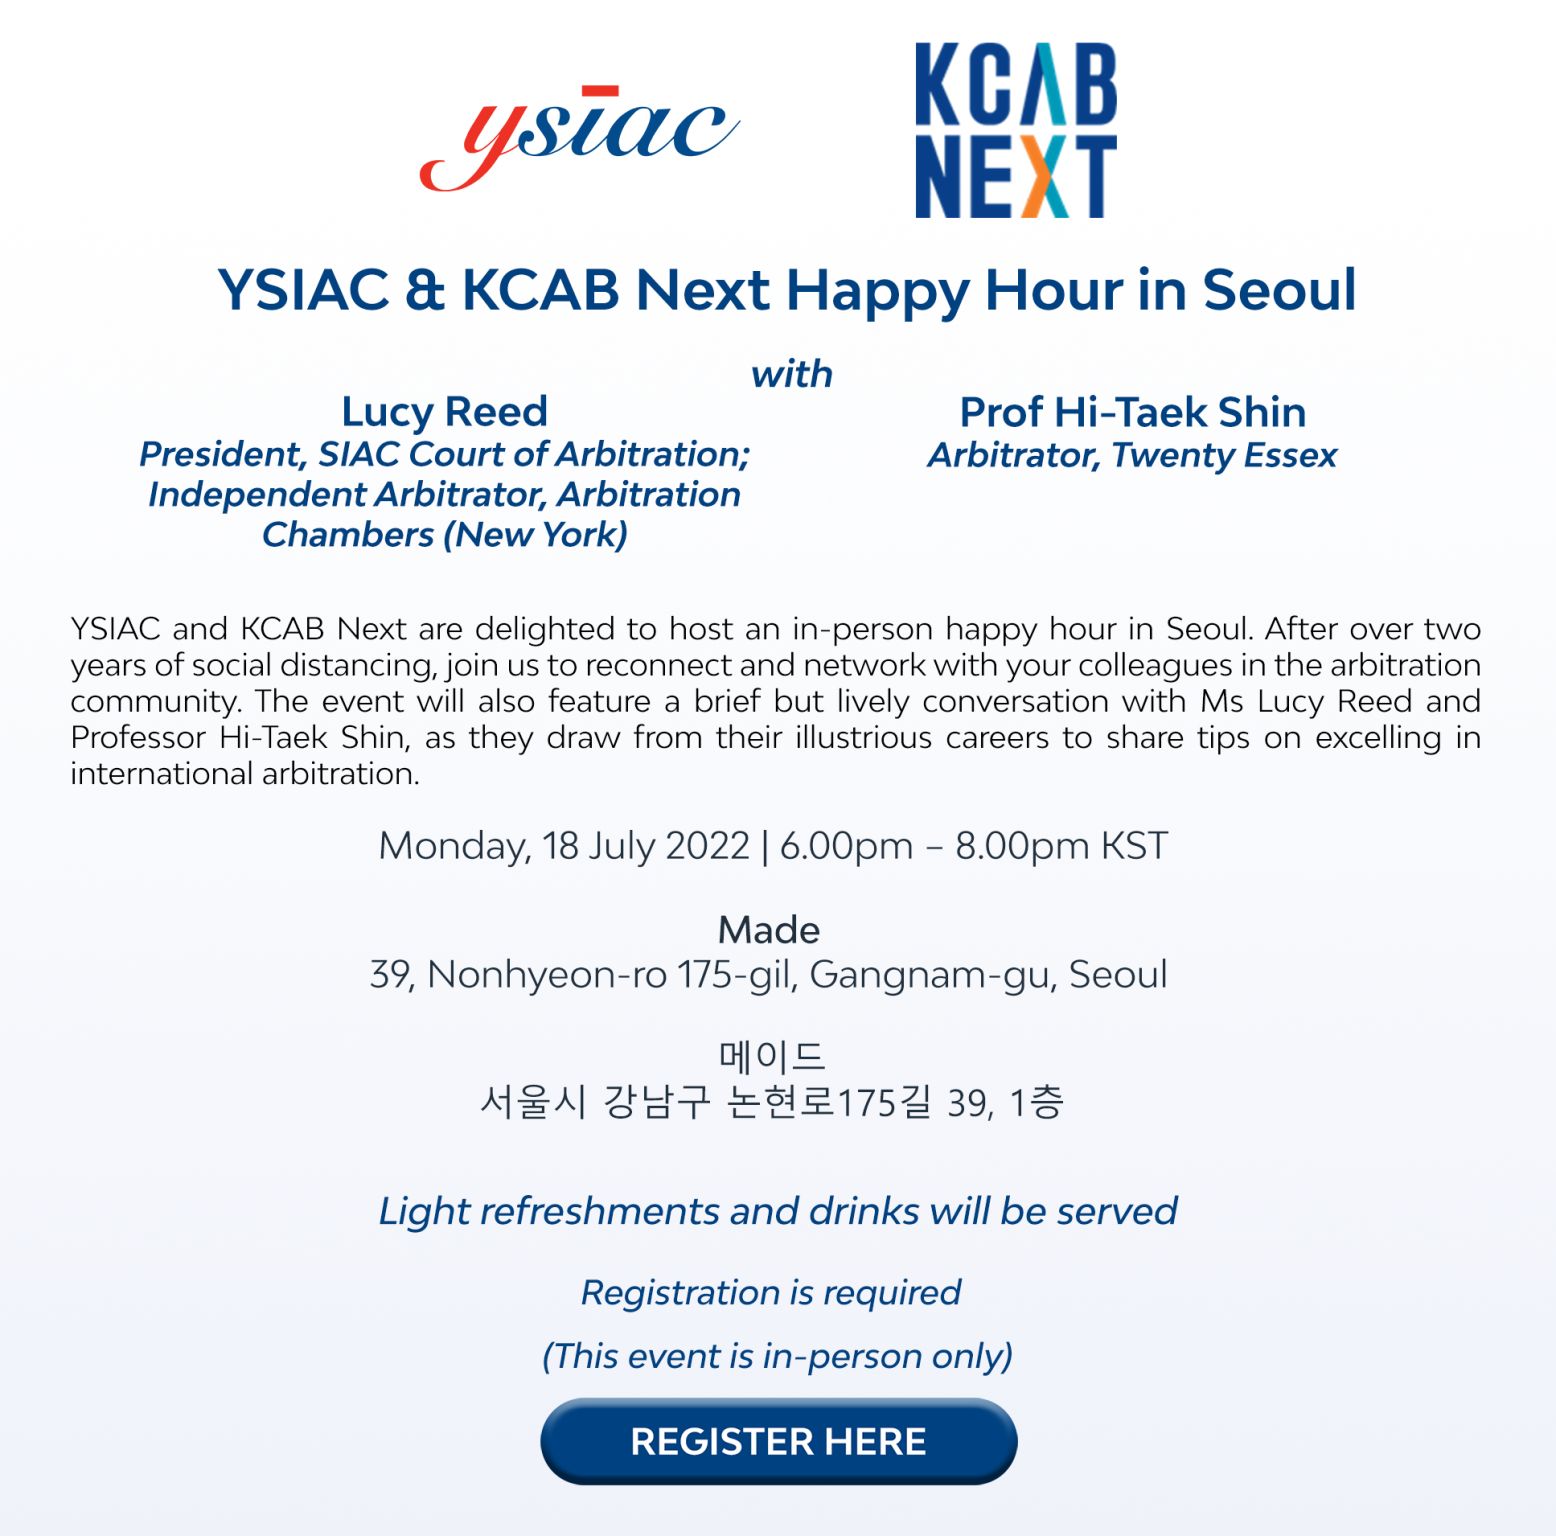 [KCAB Next] YSIAC & KCAB Next Happy Hour in Seoul